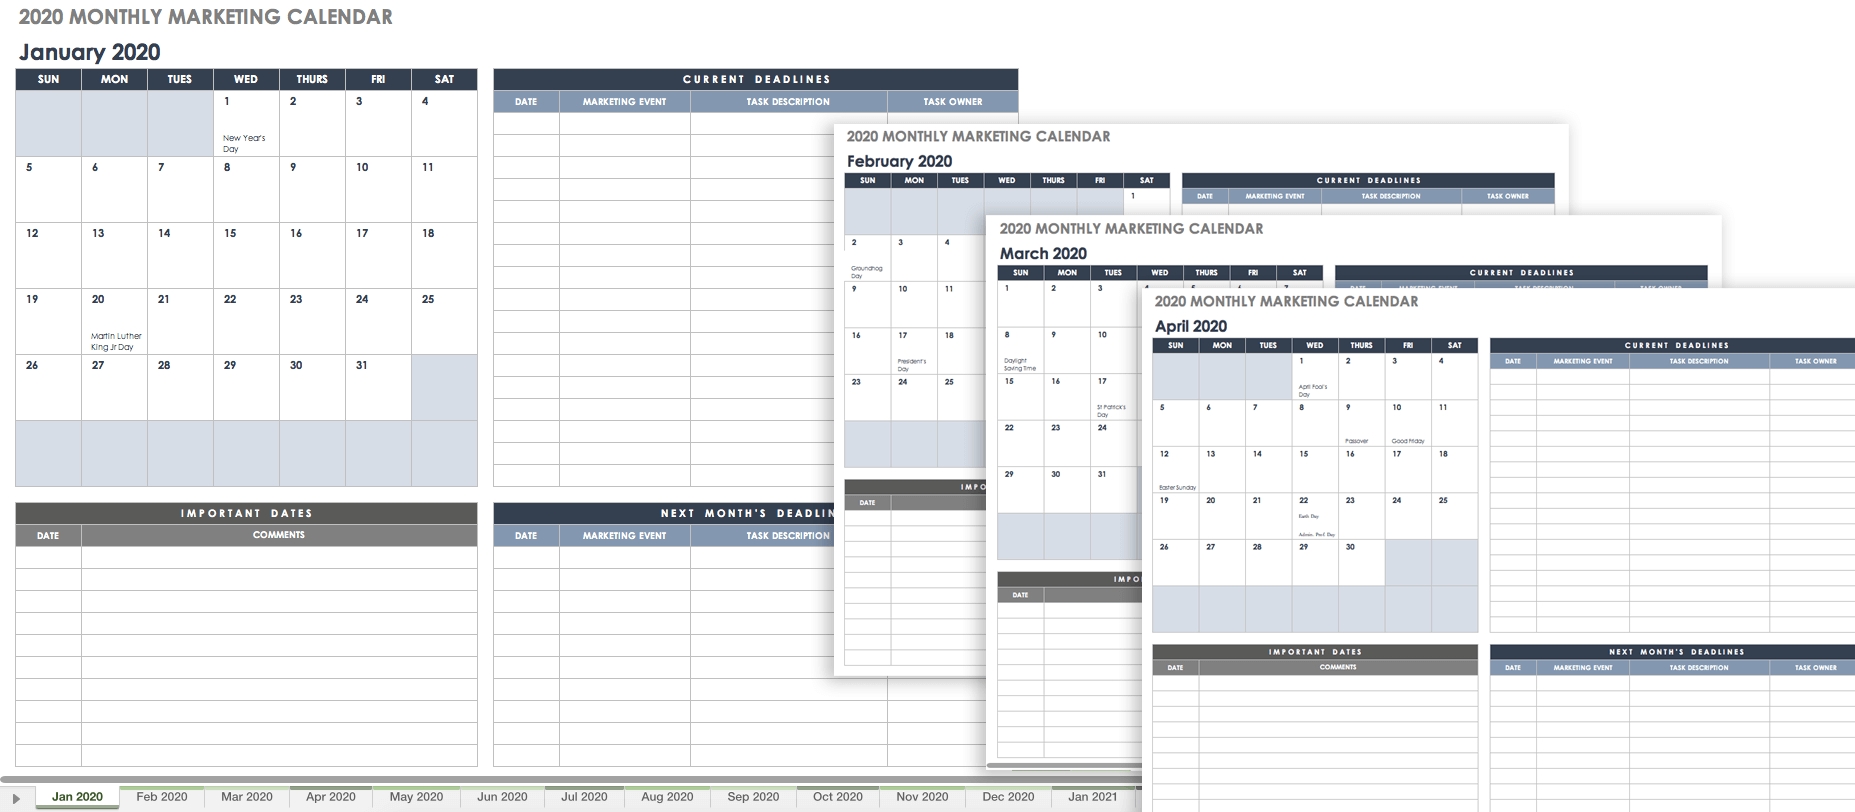 9 Free Marketing Calendar Templates For Excel - Smartsheet within Schedule Of Activities Calendar Format